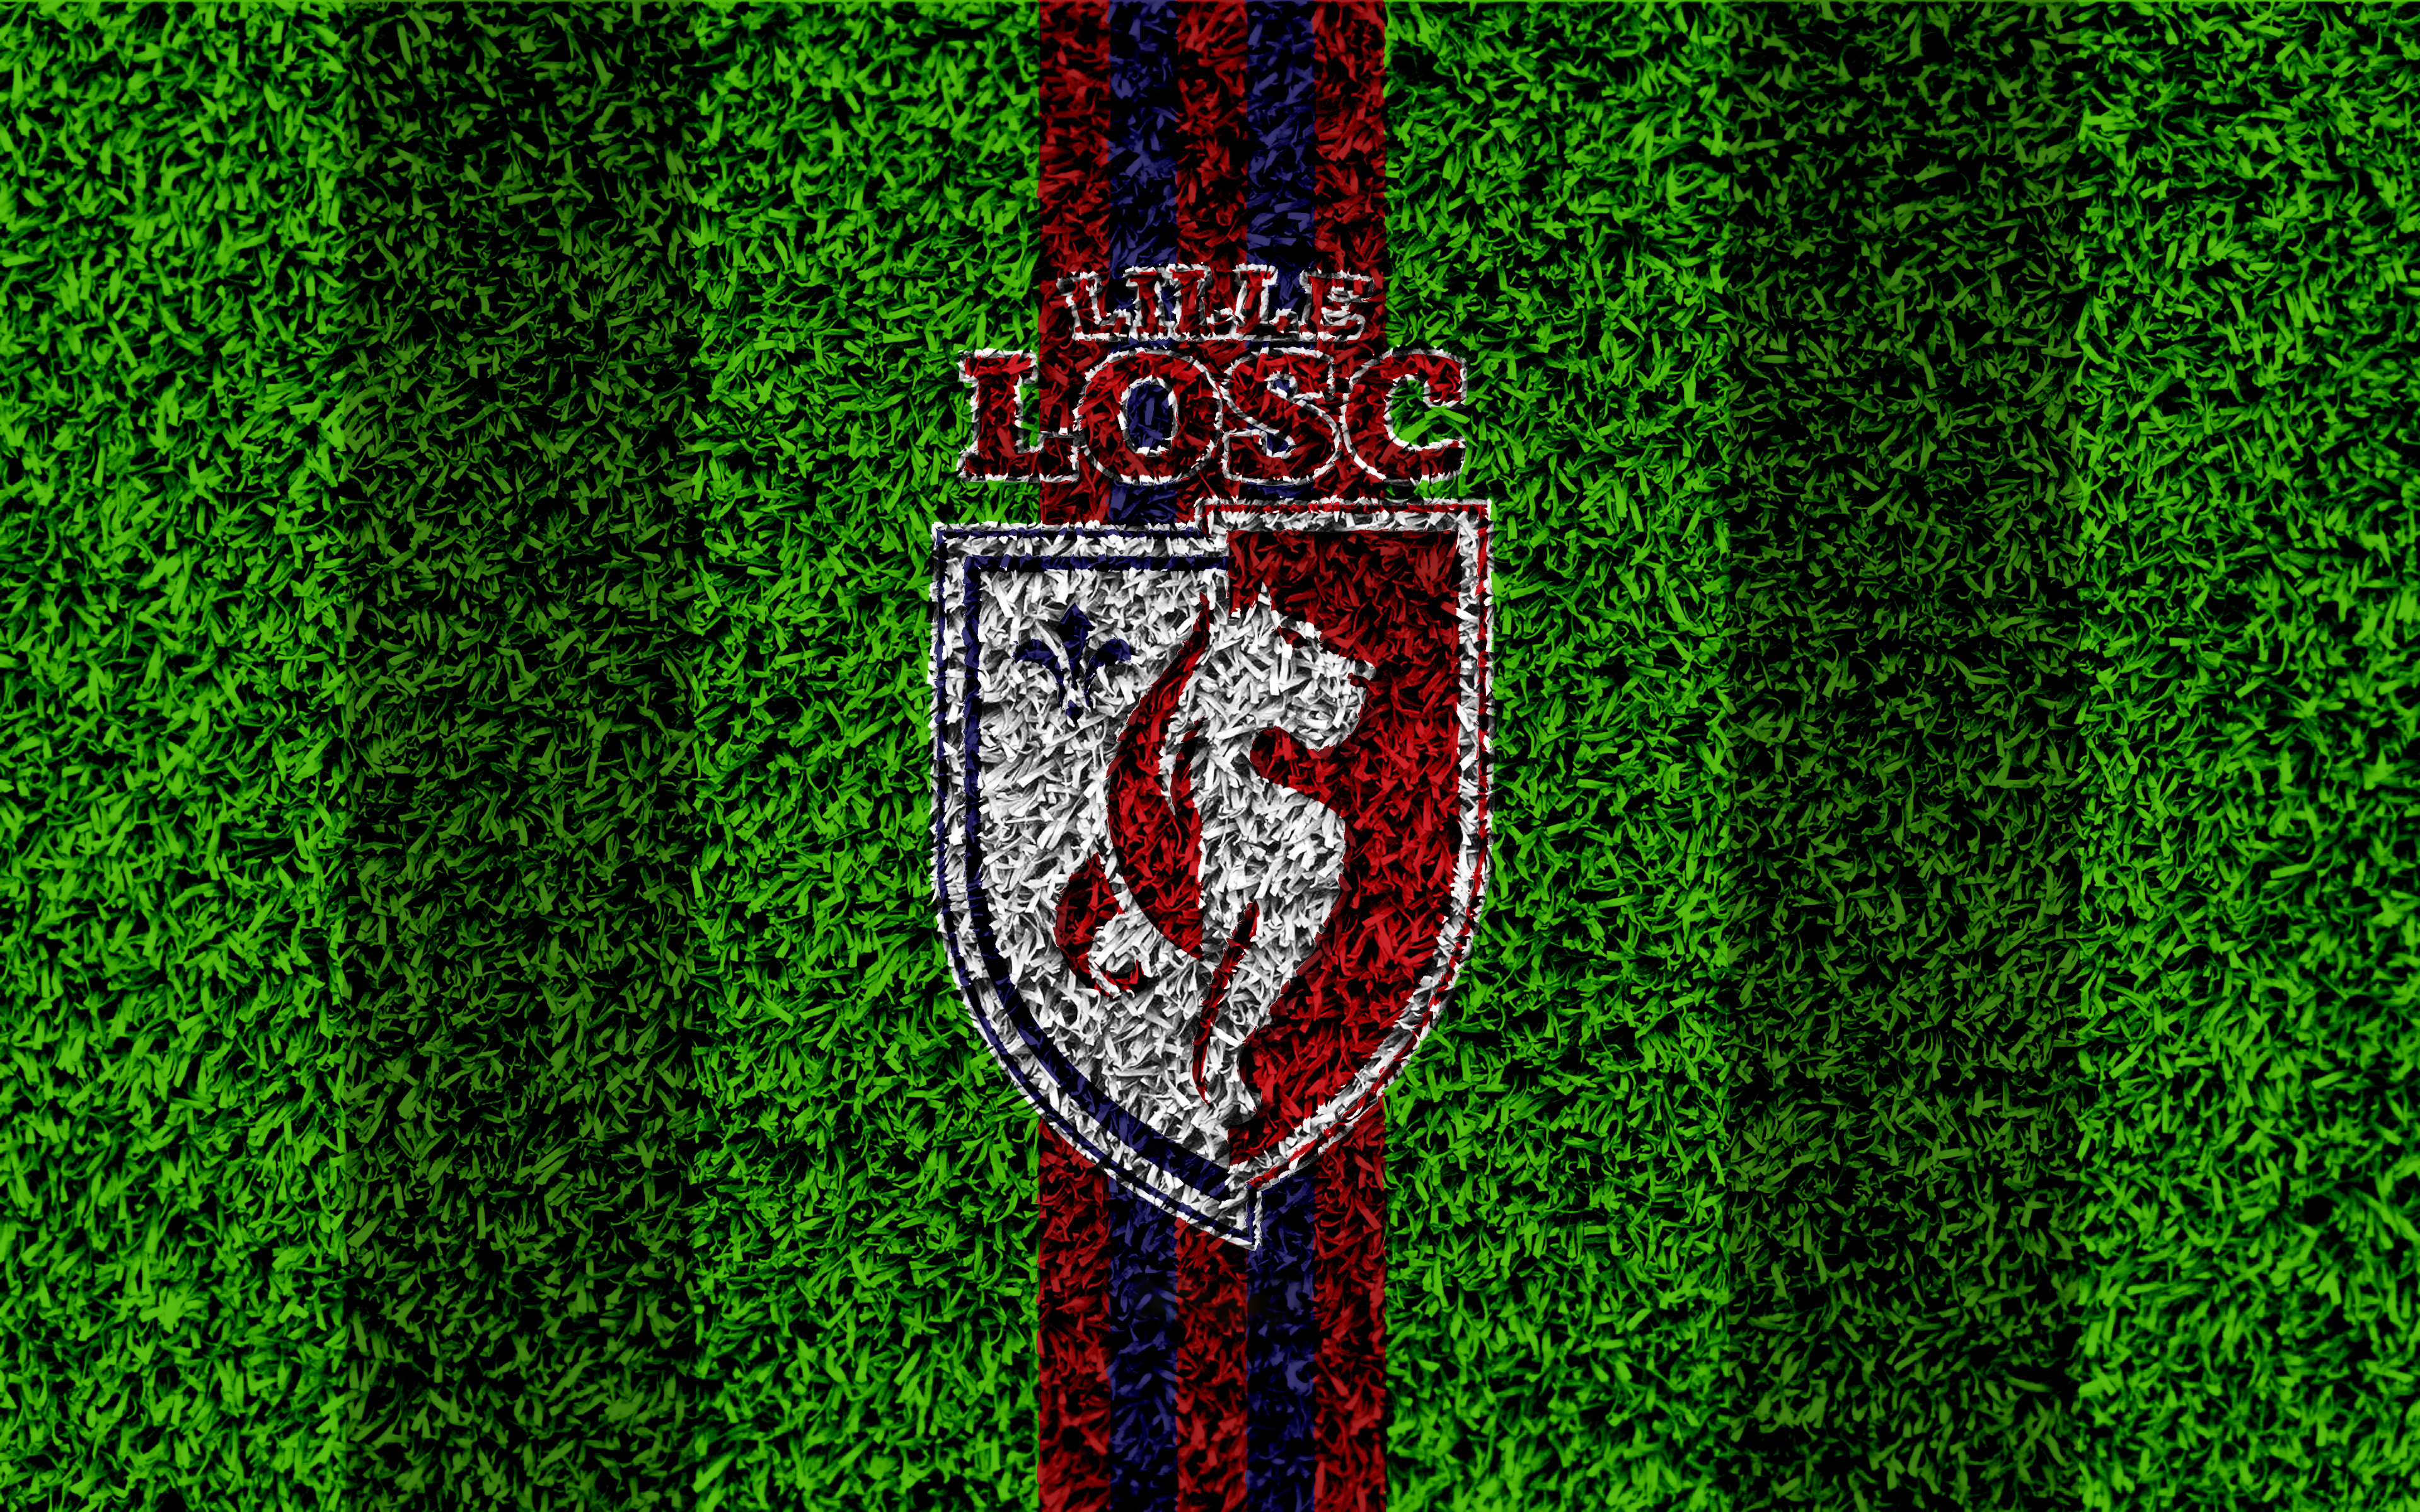 Download mobile wallpaper Sports, Logo, Emblem, Soccer, Lille Osc for free.